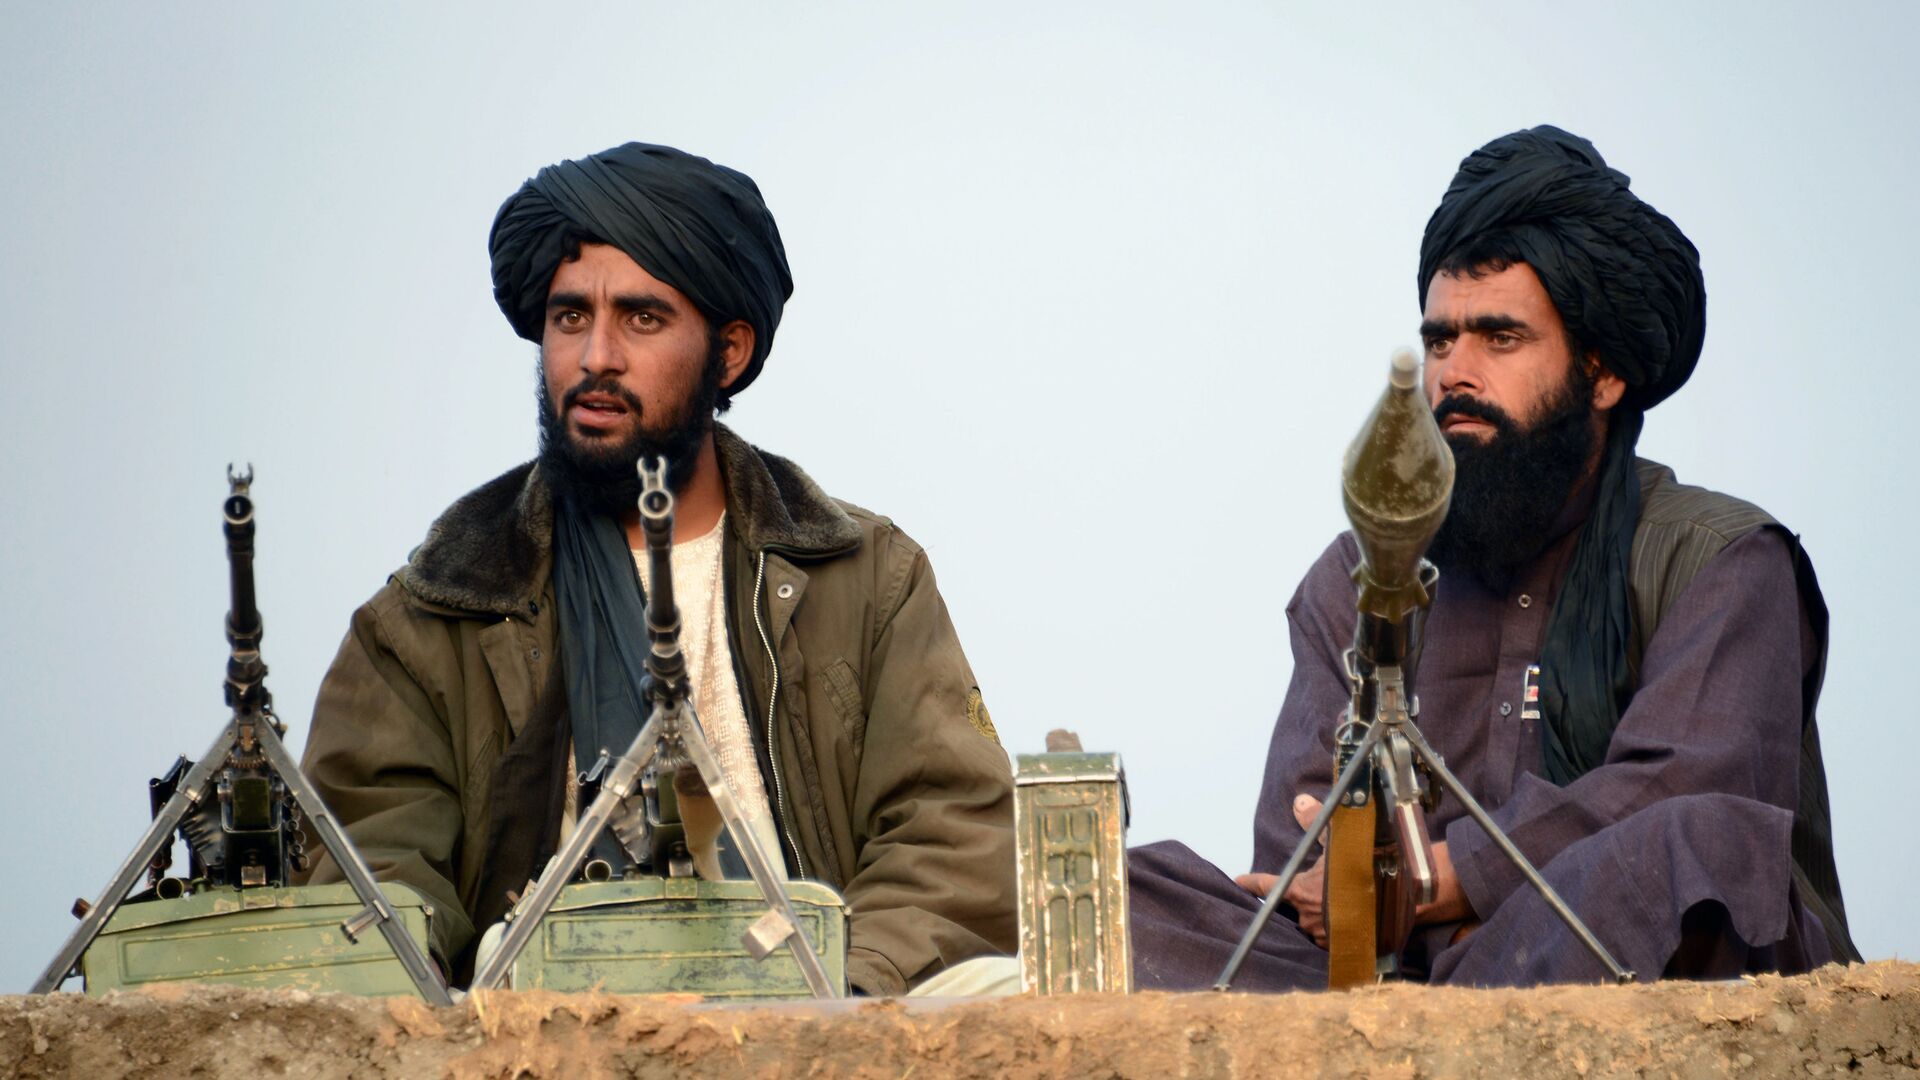 Боевики движения Талибан, архивное фото - Sputnik Таджикистан, 1920, 27.09.2021